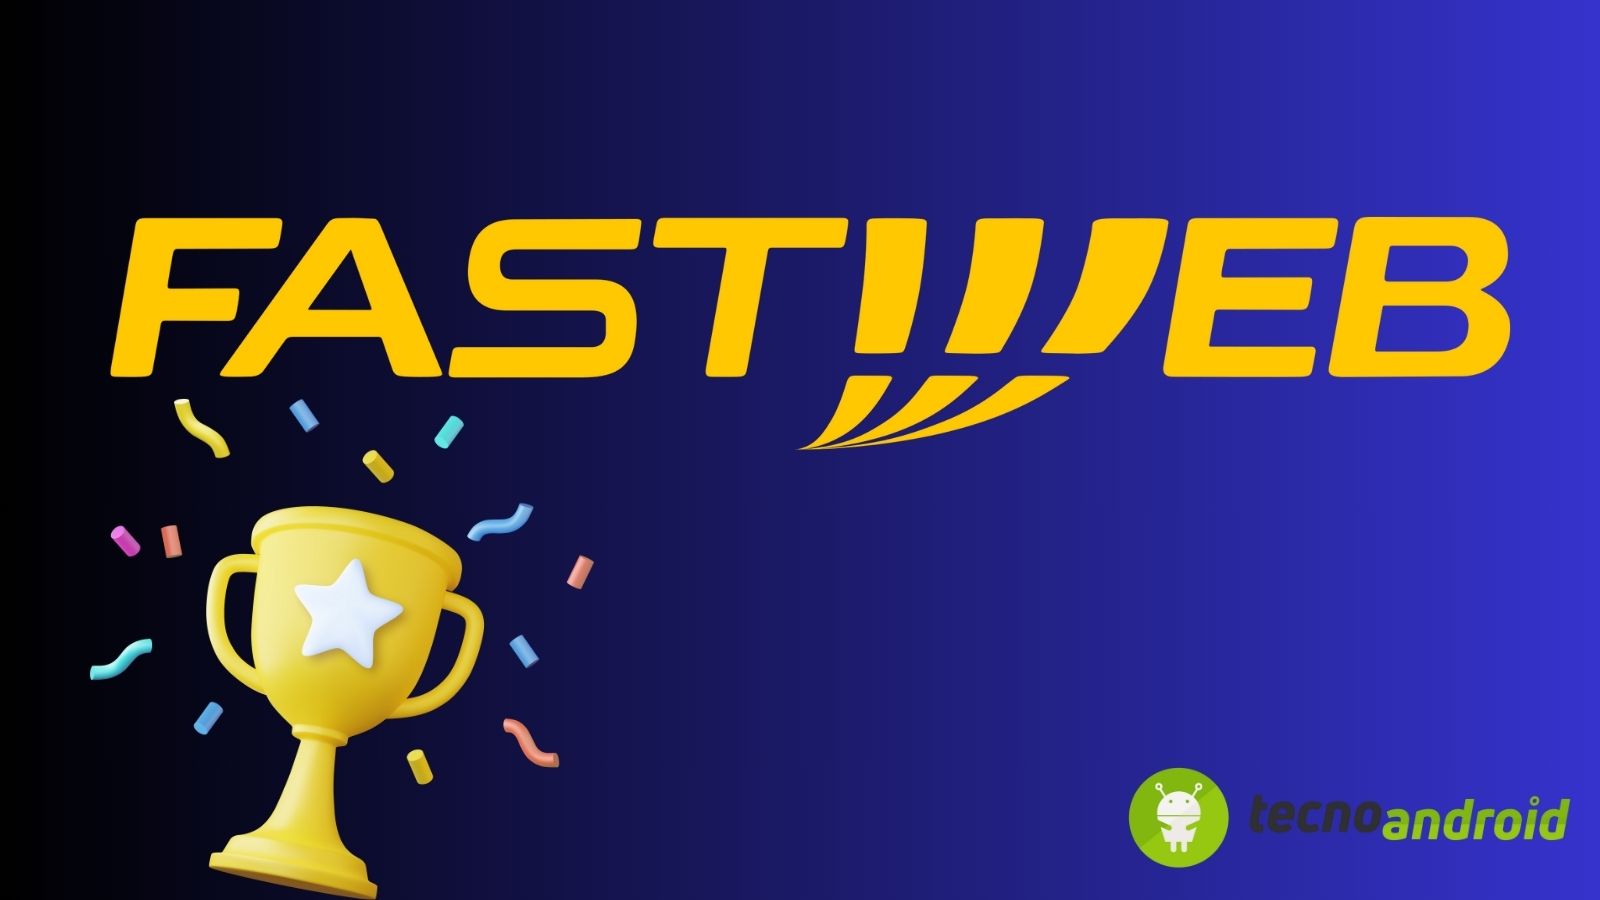 Fastweb vince il titolo di rete più veloce d'Italia battendo tutti